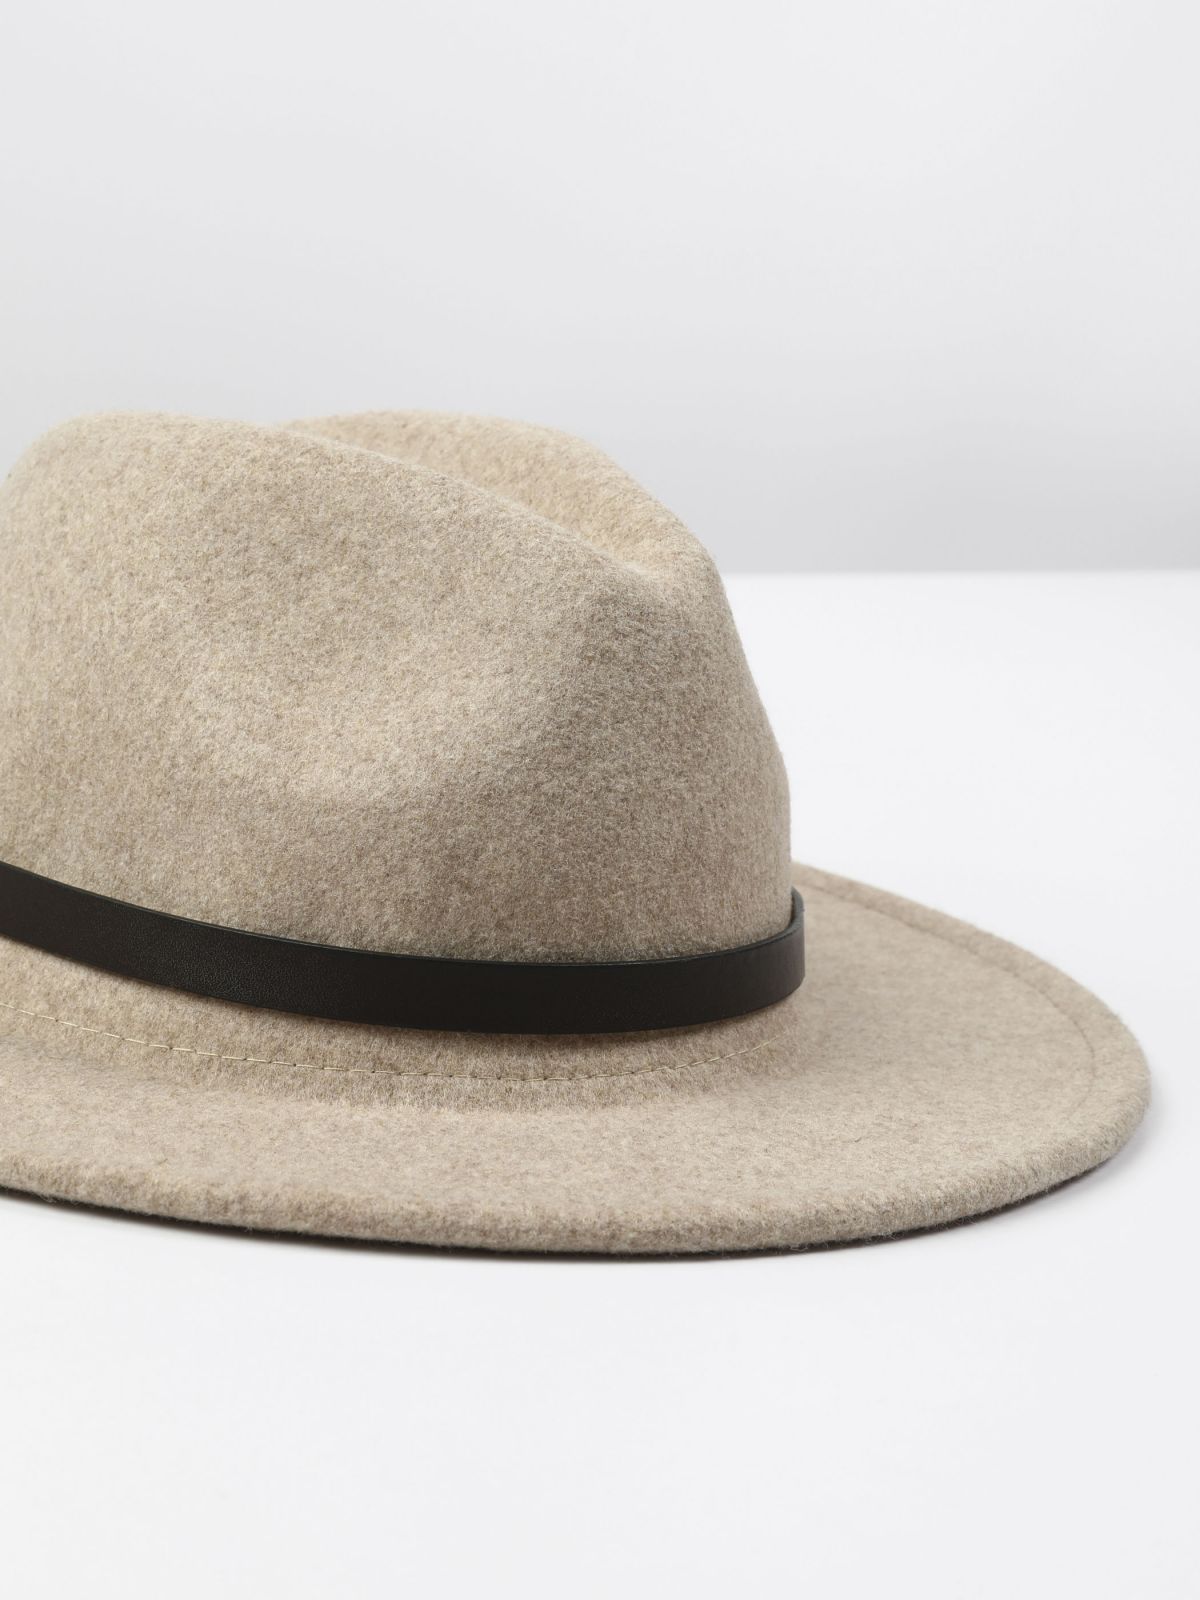  כובע דמוי צמר רחב שוליים בשילוב רצועה / נשים של TERMINAL X